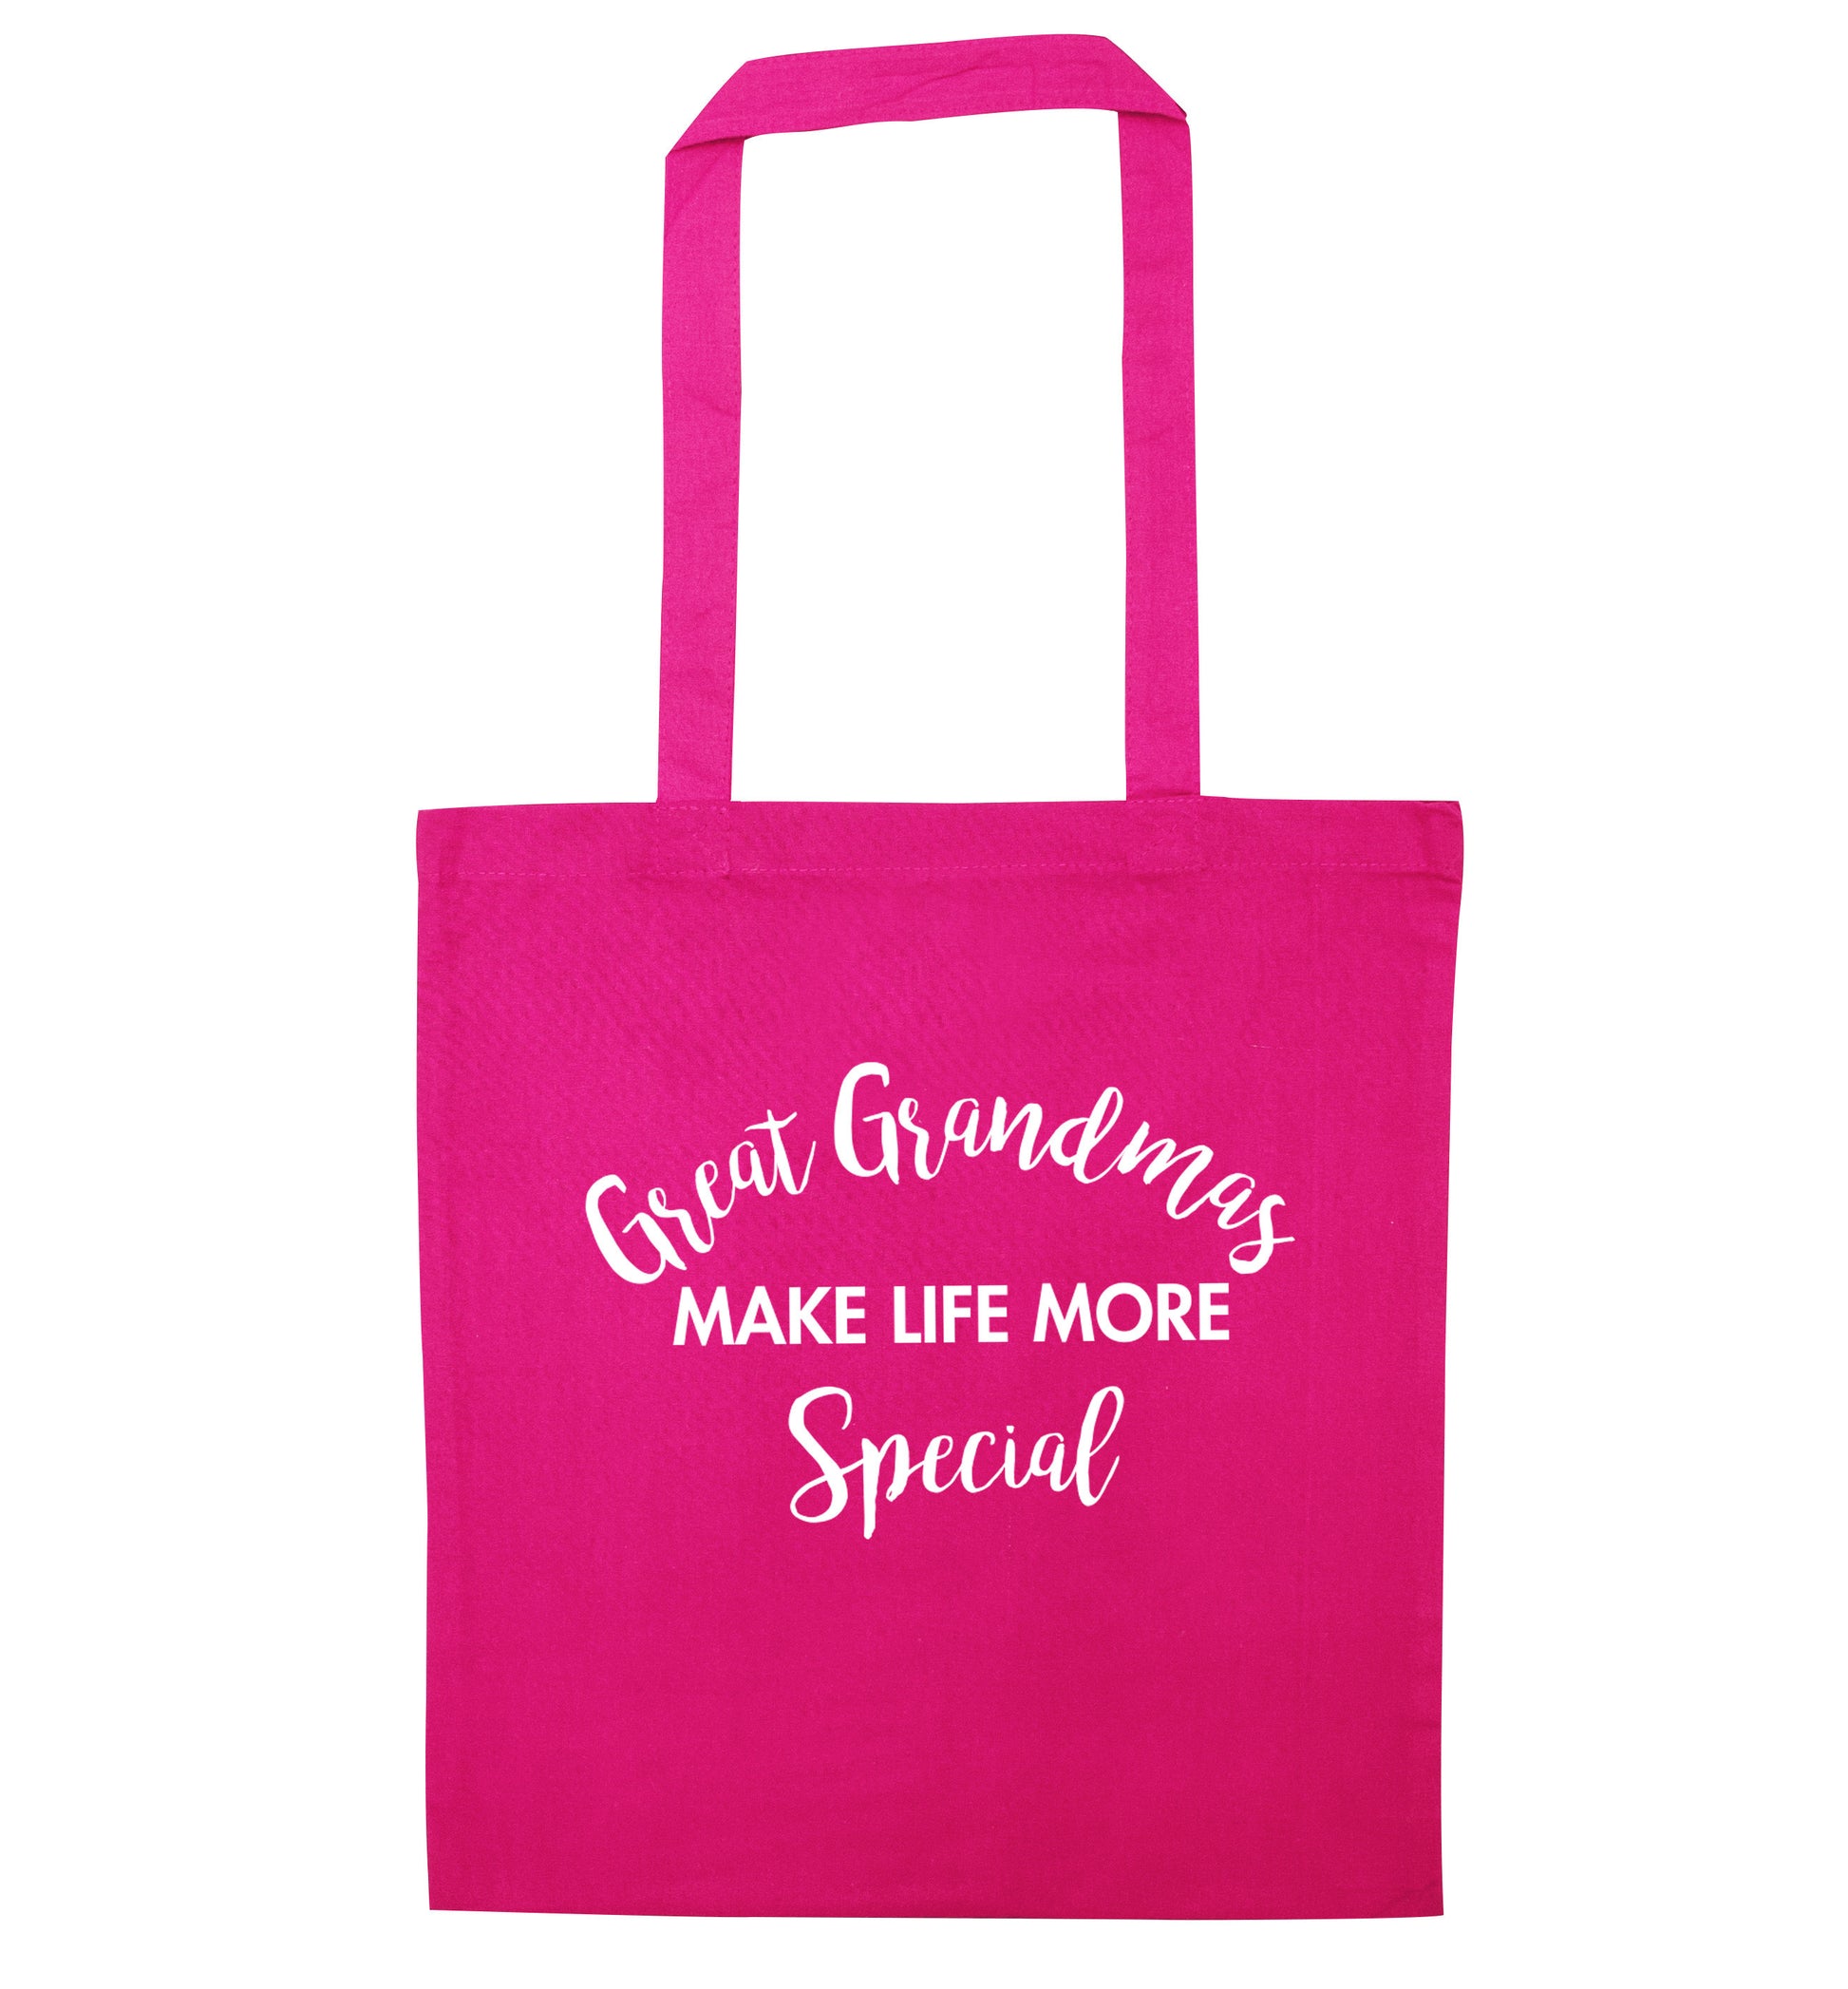 Great Grandmas make life more special pink tote bag